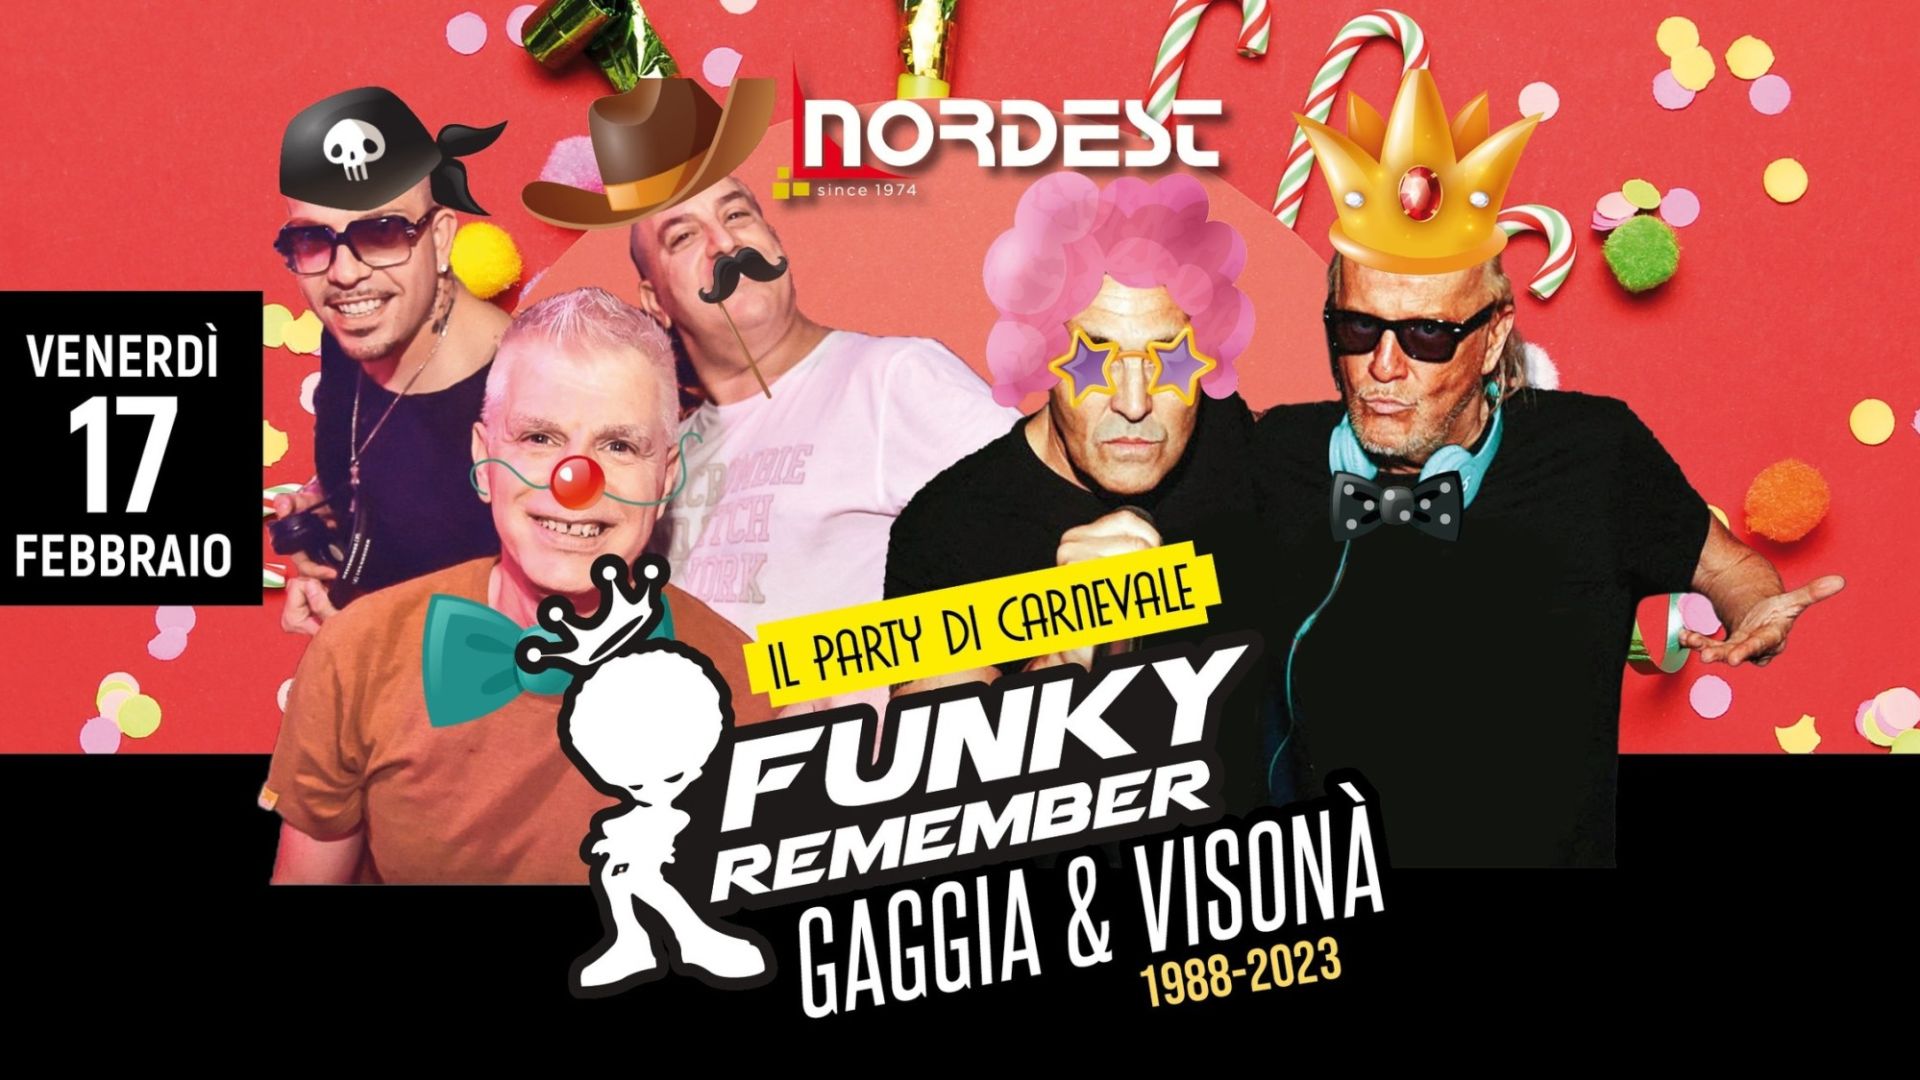 Funky Remember + Gaggia & Visonà - Il Party di Carnevale